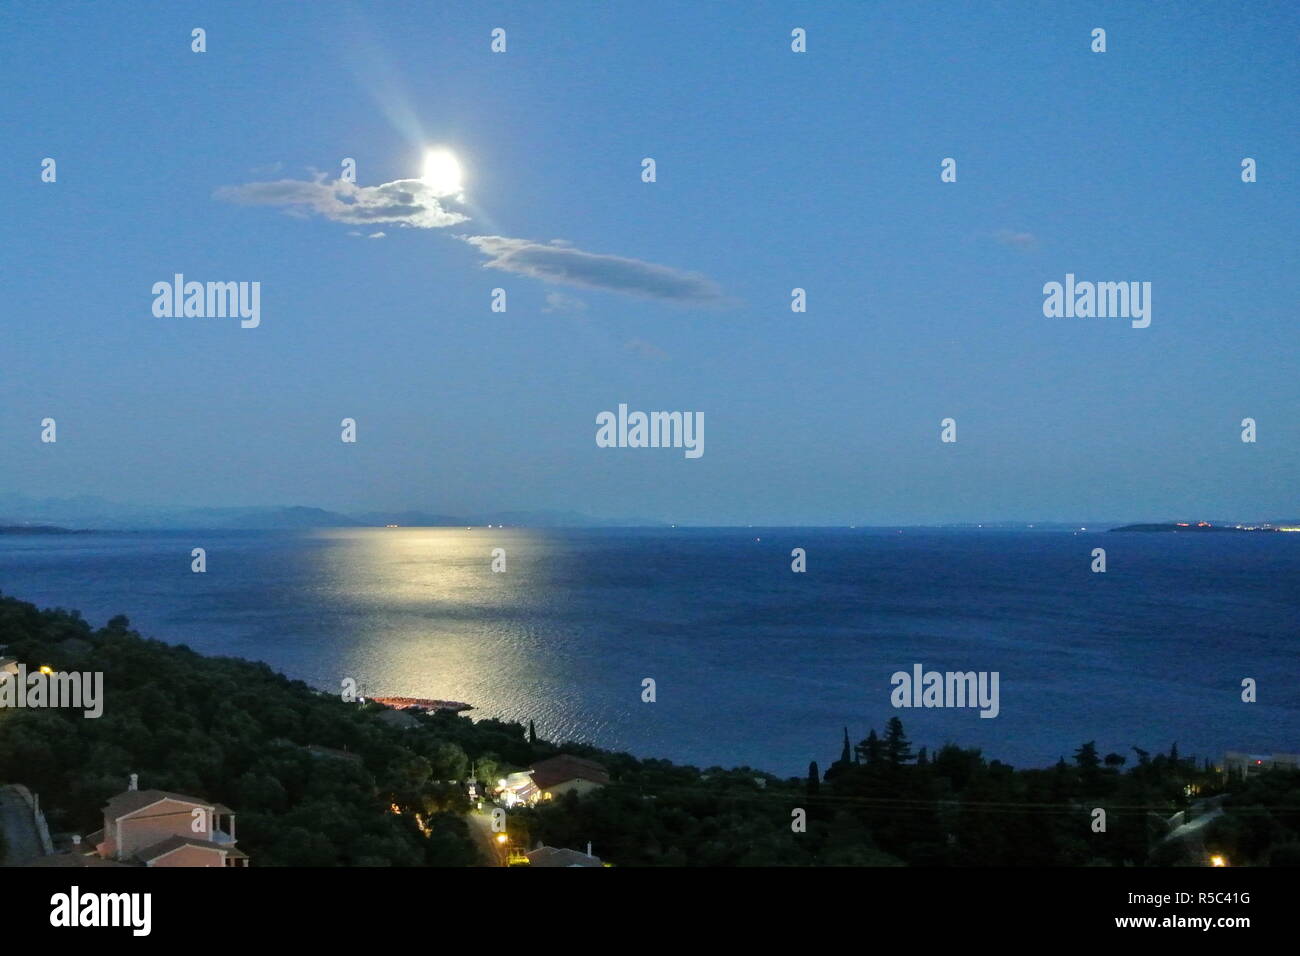 Notte, vista sul Mar Ionio sulla terraferma della Grecia, dalla bellissima isola greca di Corfù. La luce di luna si rifletteva sulle acque ferme. Foto Stock